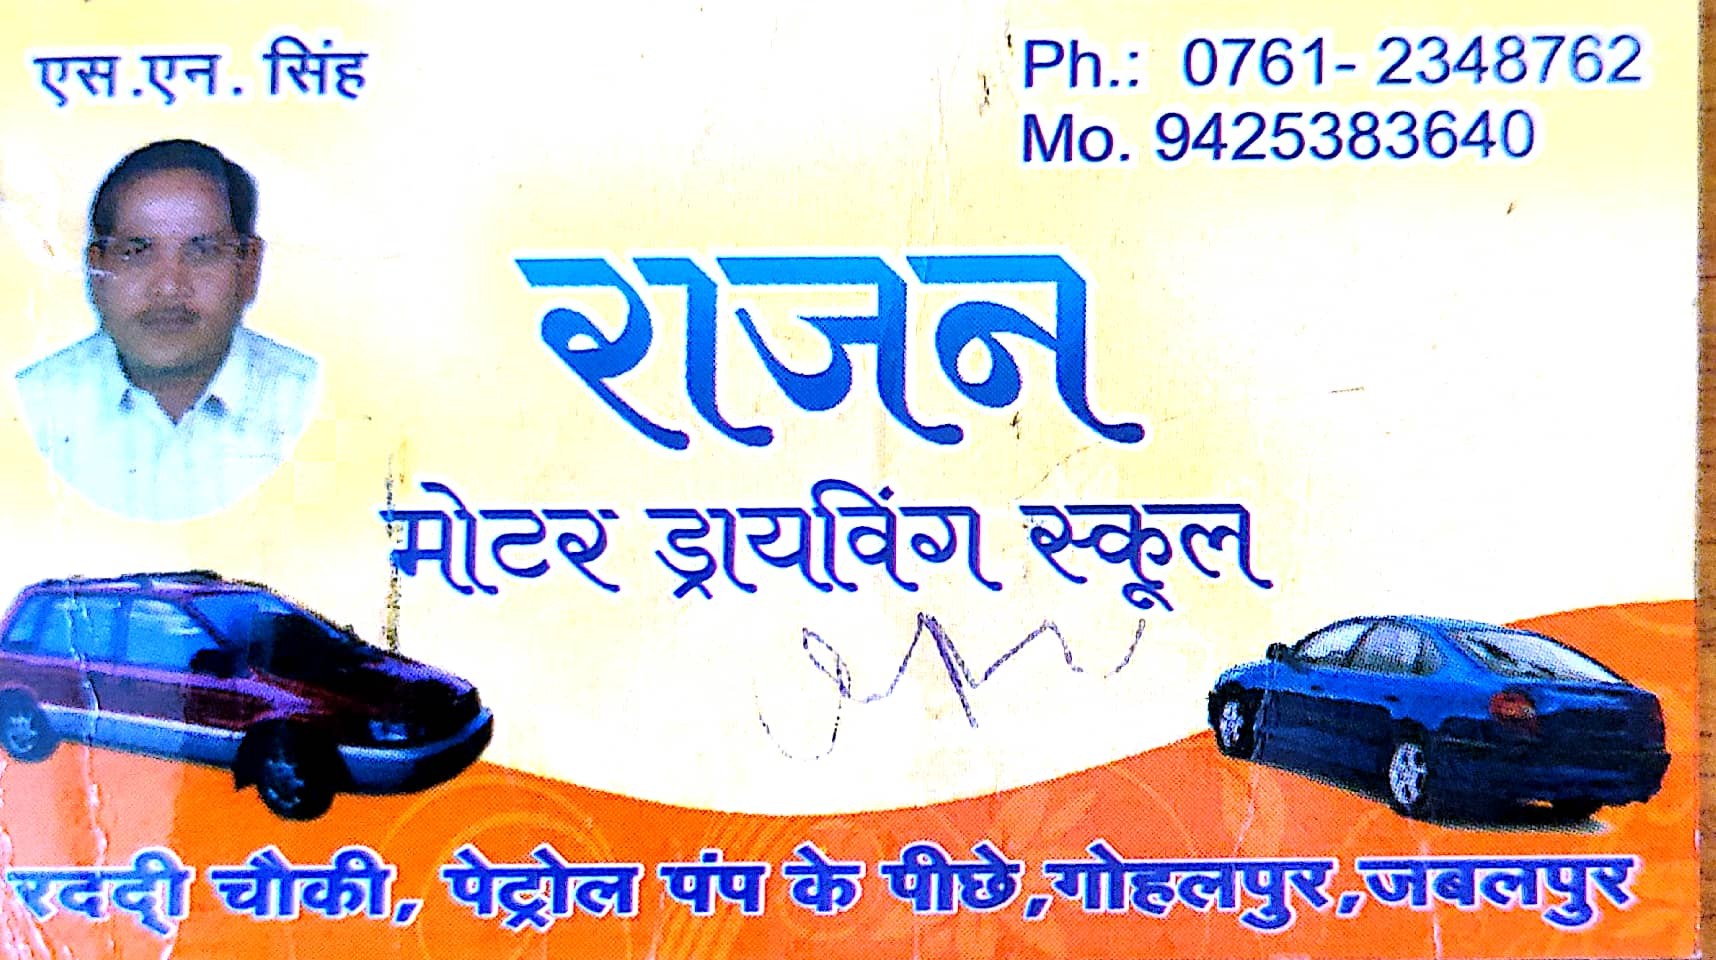 Rajan Moter Driving School Jabalpur